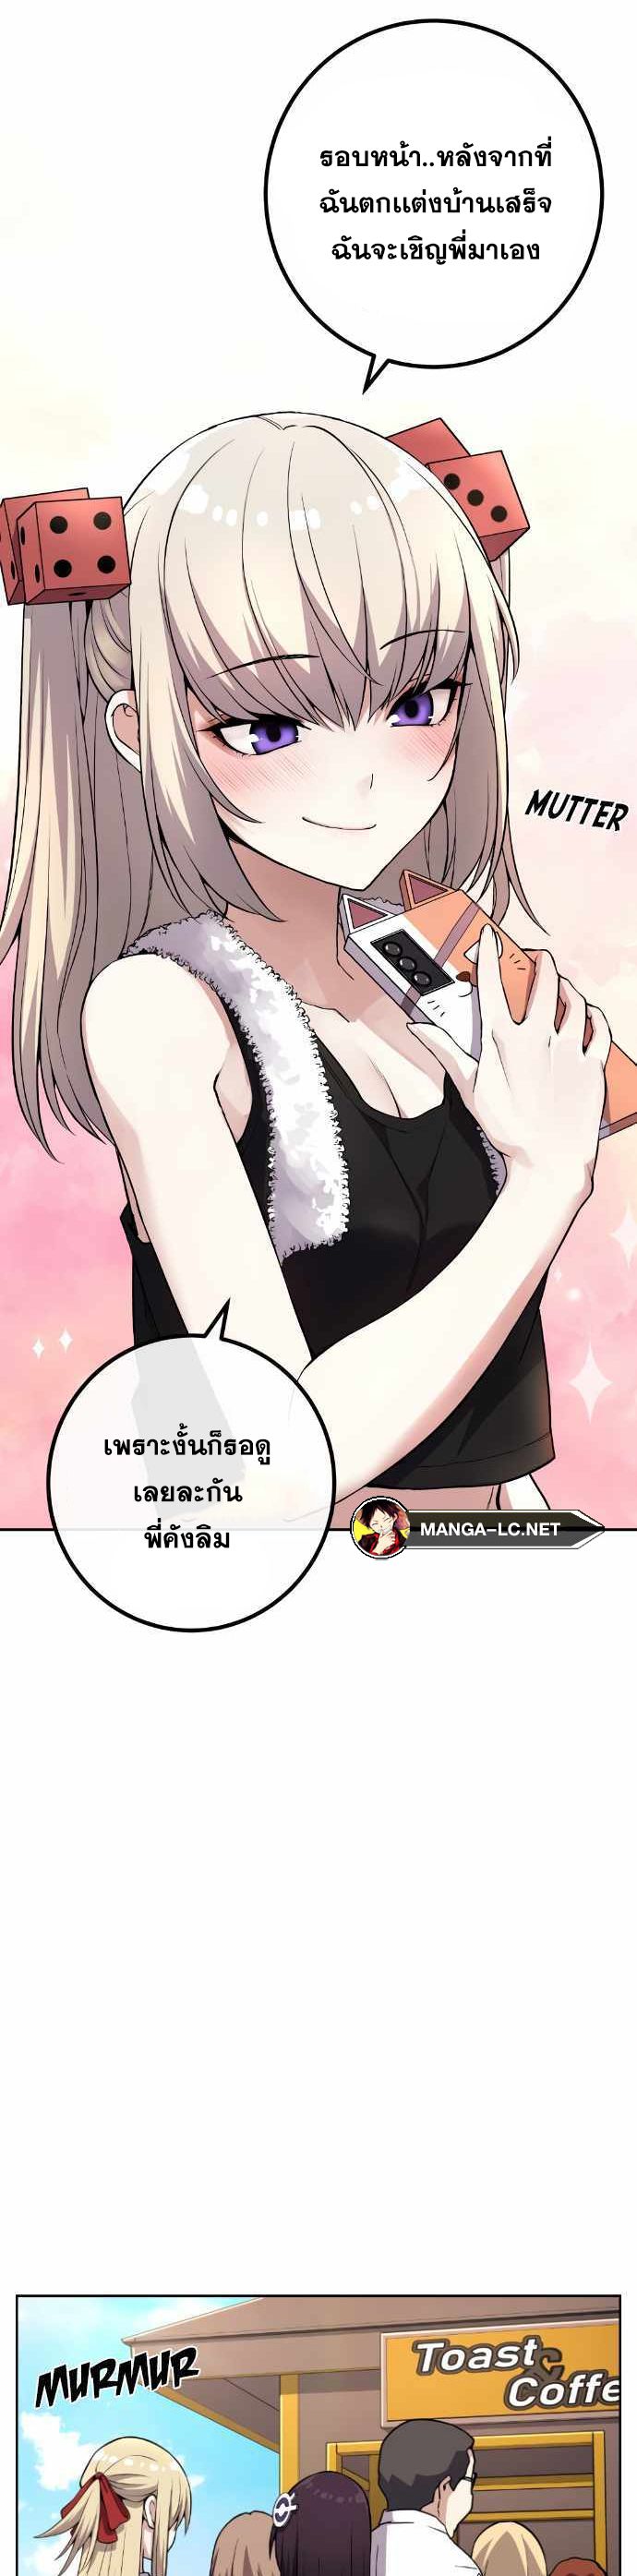 Webtoon Character Na Kang Lim ตอนที่ 122 (9)